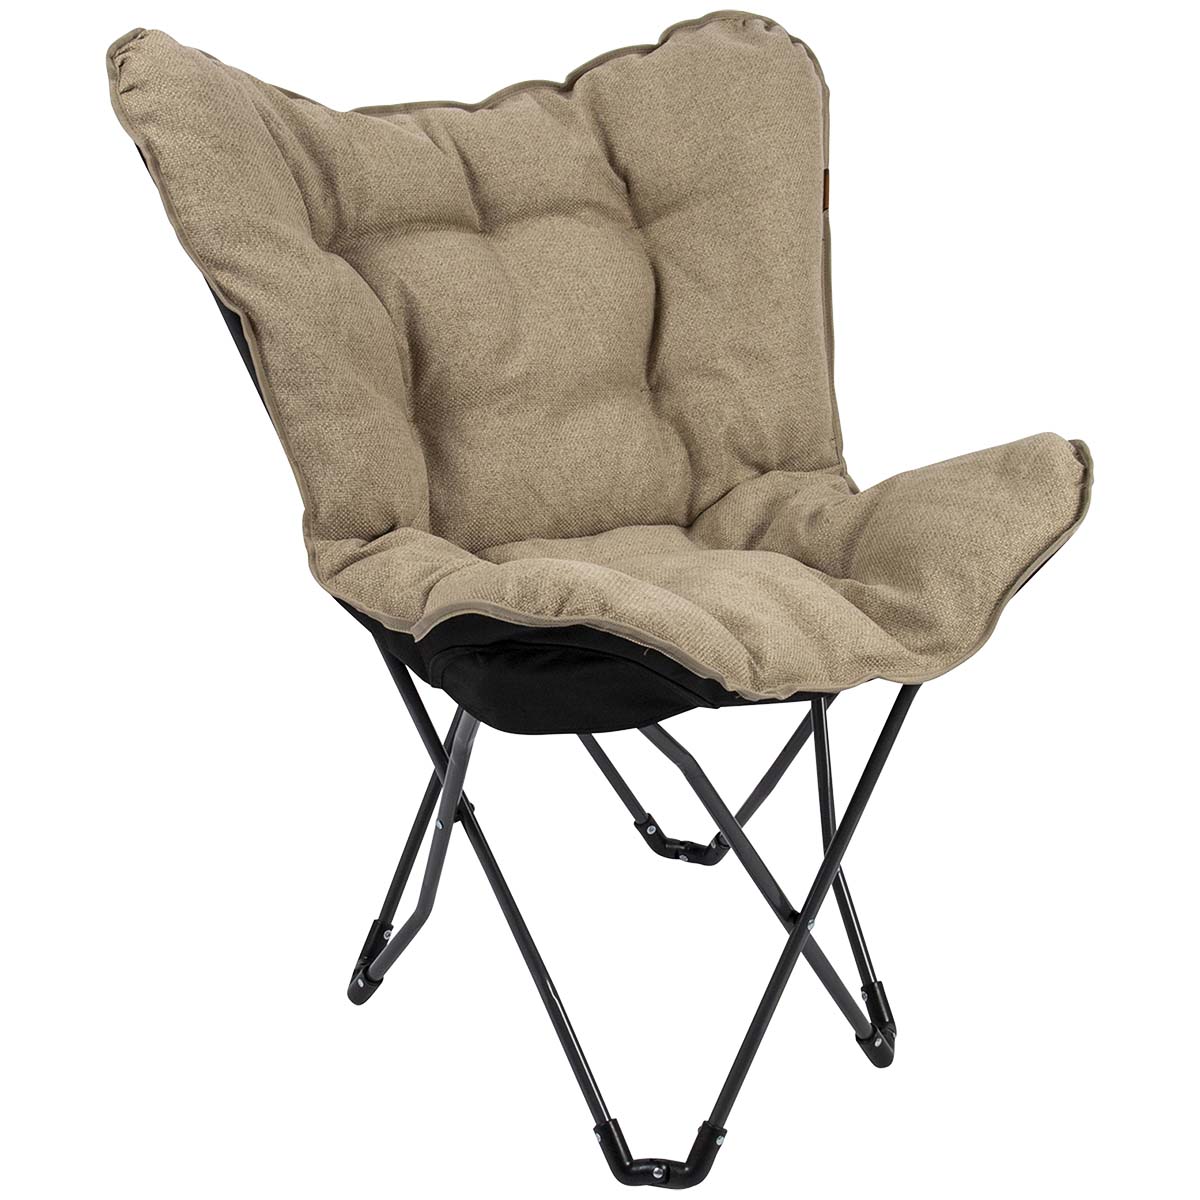 1200391 Een stijlvolle vlinderstoel uit de Urban Outdoor collectie. De luxe stoel is voorzien van een stijlvol donkergrijs stalen frame. De beige zitting is gemaakt van Stof Nika. Stof Nika kentmerkt zich aan de een zachte touch met een robuuste uitstraling. De stoel is zeer comfortabel door de gepolsterde stof en de brede en diepe zit. Het frame is eenvoudig in te klappen waardoor de stoel handig mee te nemen is. Geschikt voor op de camping, in de tuin maar ook op het balkon of in huis kan deze stoel gebruikt worden.